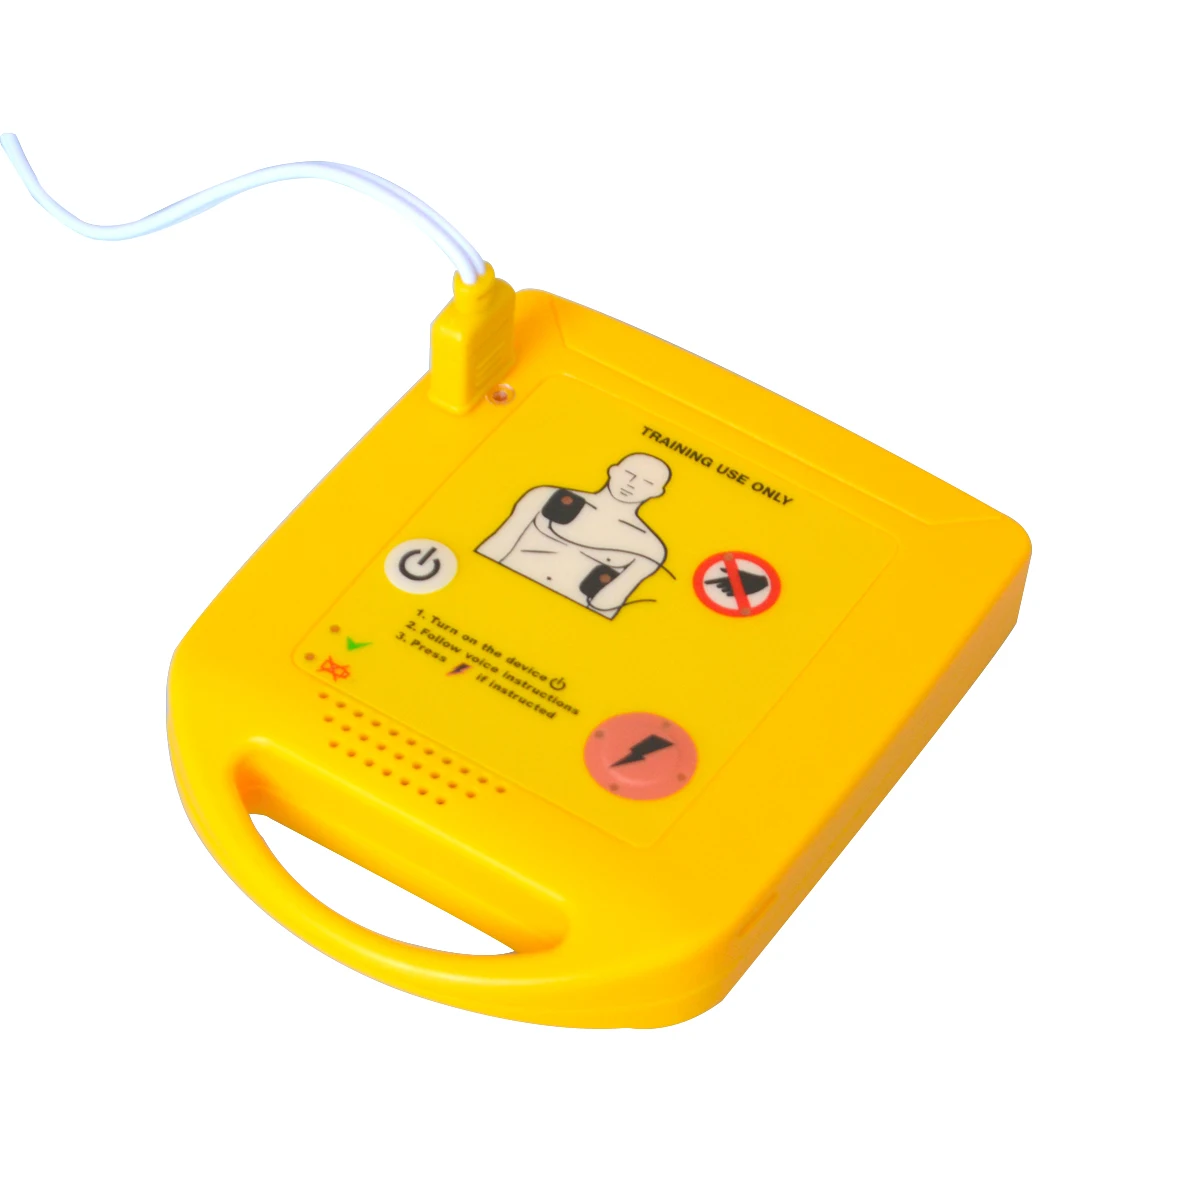 Мини AED тренажер Автоматический Внешний Дефибриллятор аварийный CPR Skill учебная машина на португальский+ 1 CPR первая маска первой помощи